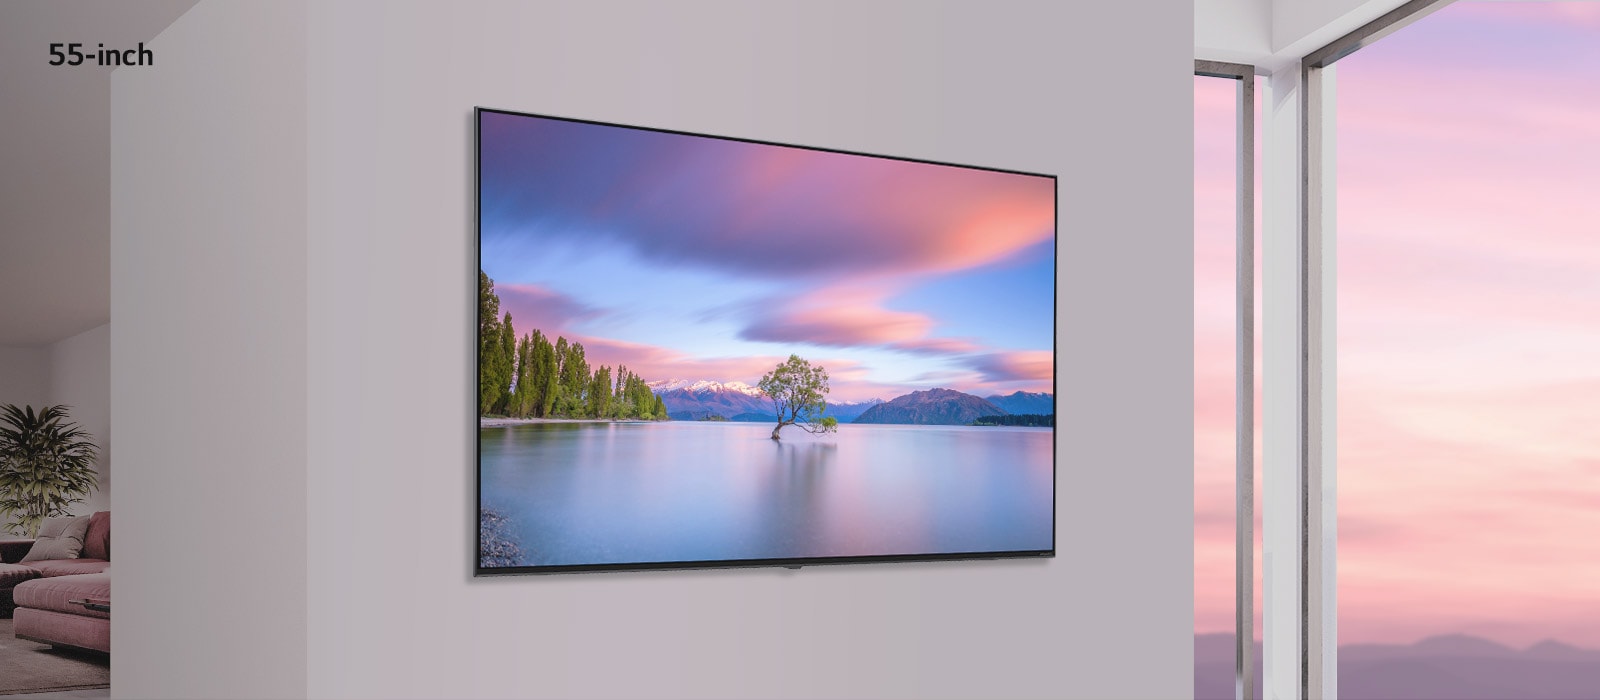 Una escena que muestra un televisor de pantalla plana montado en una pared blanca. A medida que la imagen se desplaza de lado a lado, la imagen cambia de un televisor de 55 pulgadas a uno de 86.